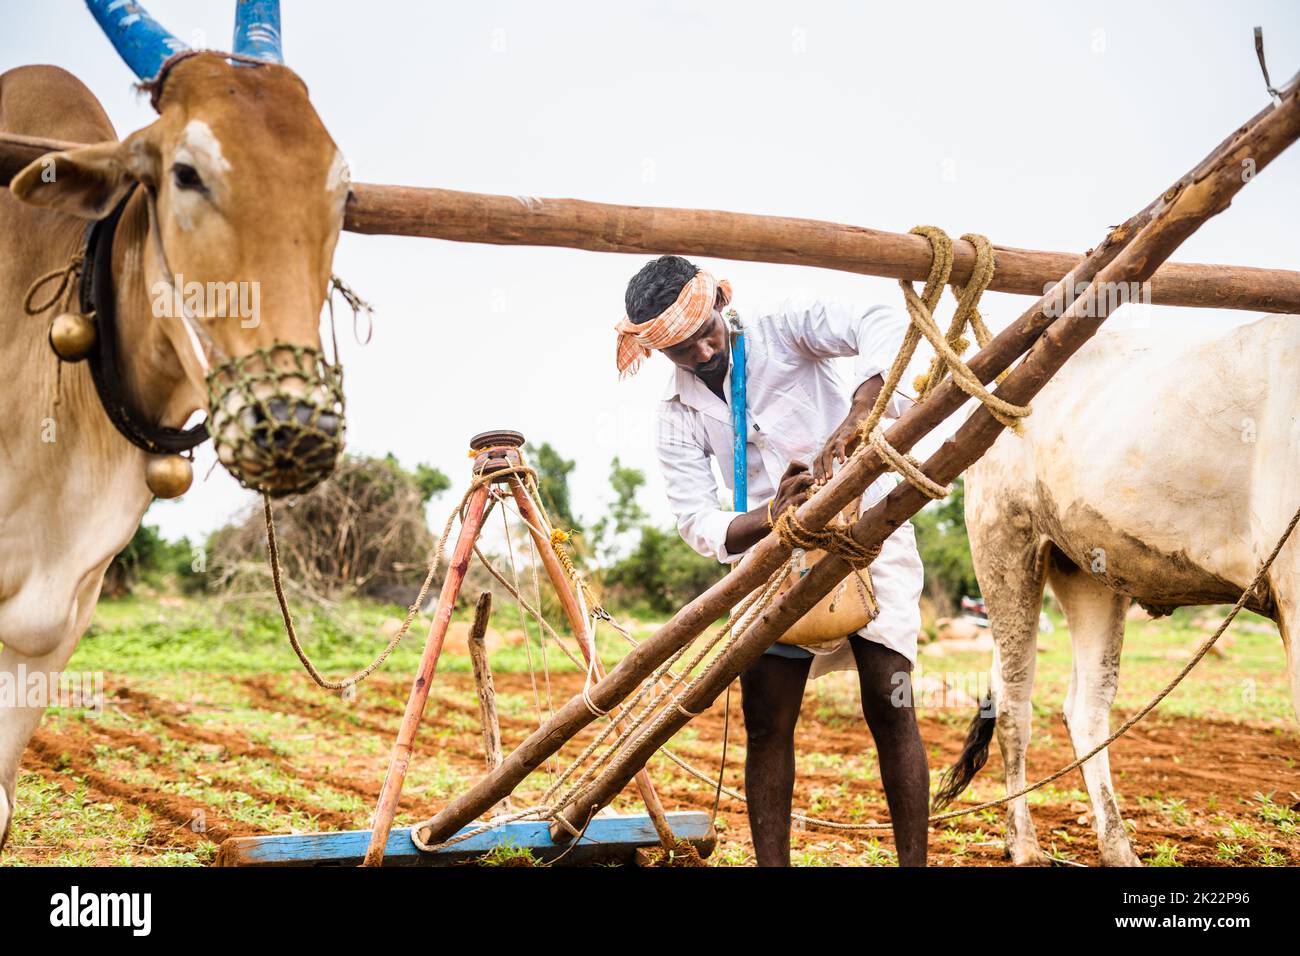 Agricultor tensando la cuerda de arado mientras se prepara para el trabajo en tierras agrícolas utilizando bueyes - concepto de forma tradicional de agricultura, la india rural y el pueblo Foto de stock